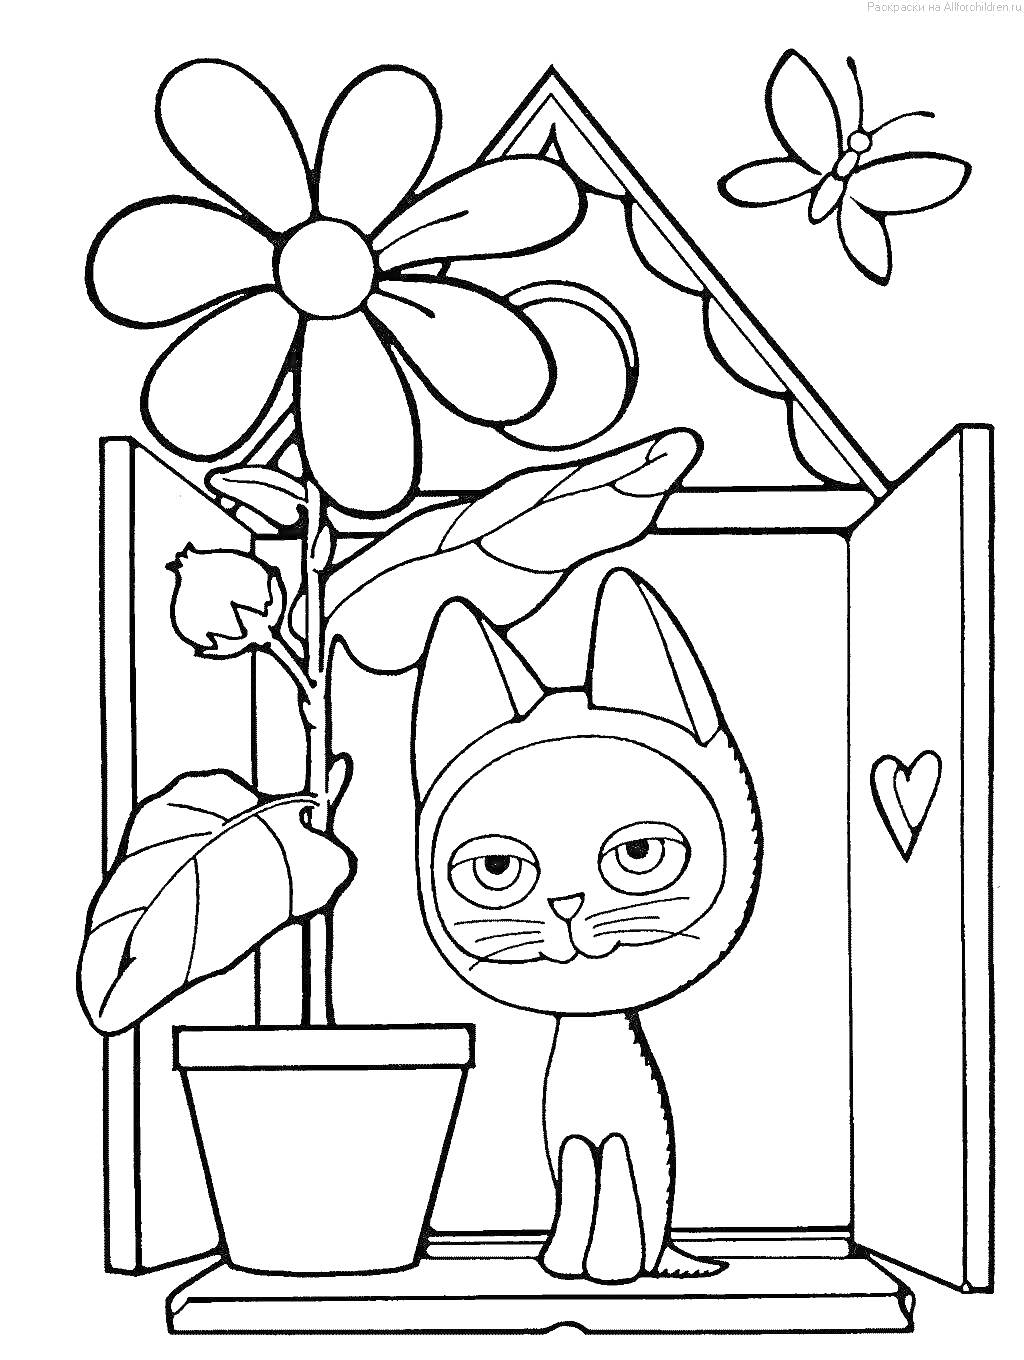 Котенок по имени Гав около окна с растением и бабочкой